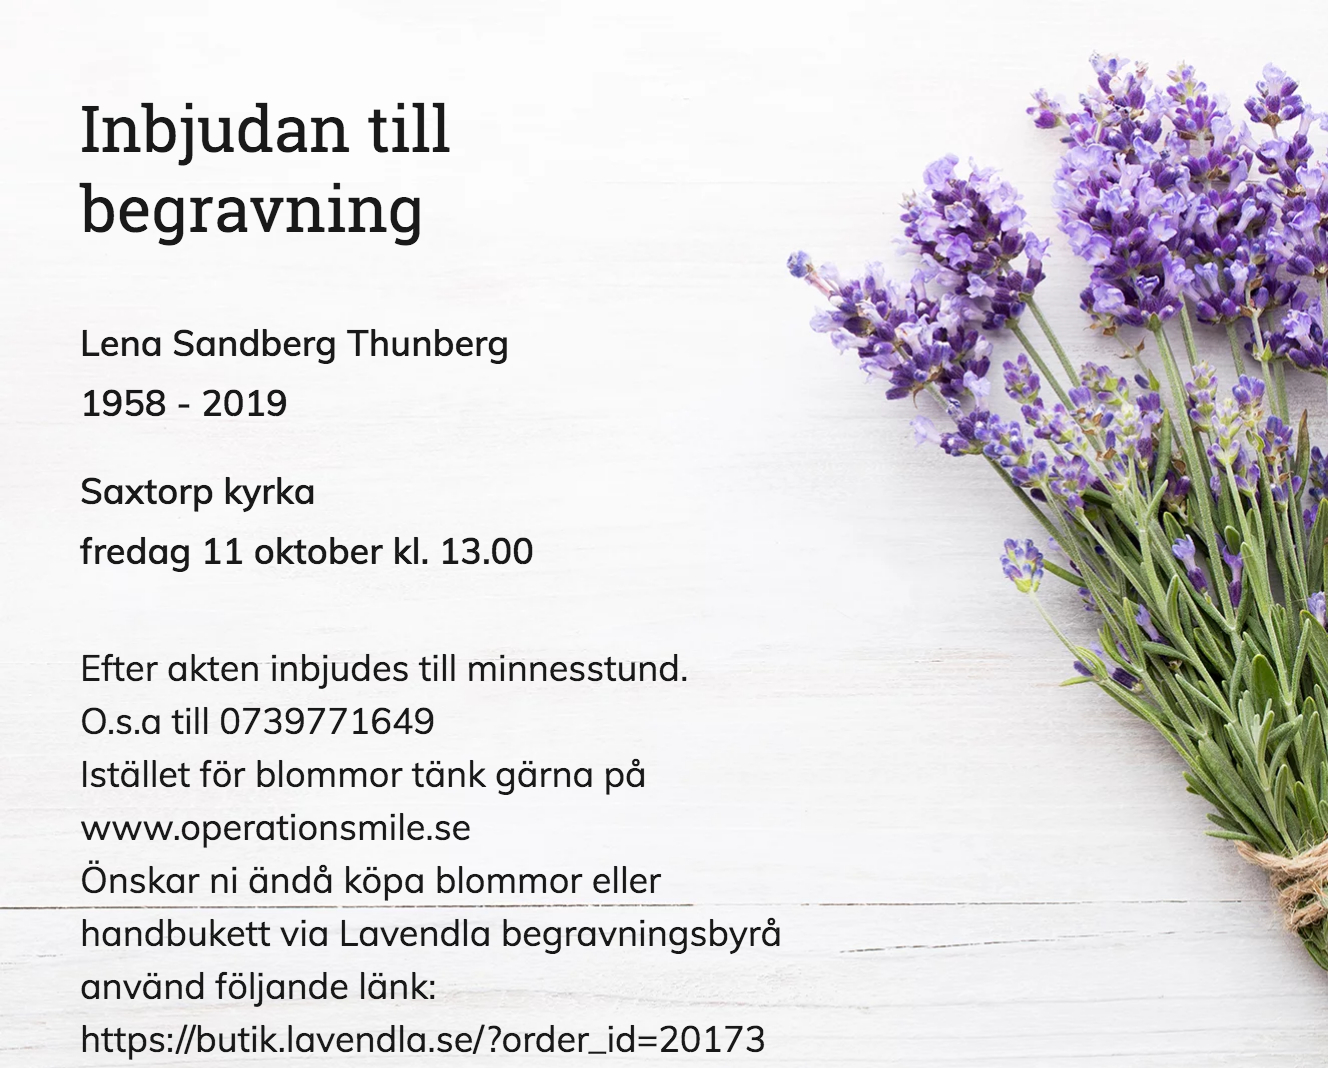 Inbjudningskort till ceremonin för Lena Sandberg Thunberg